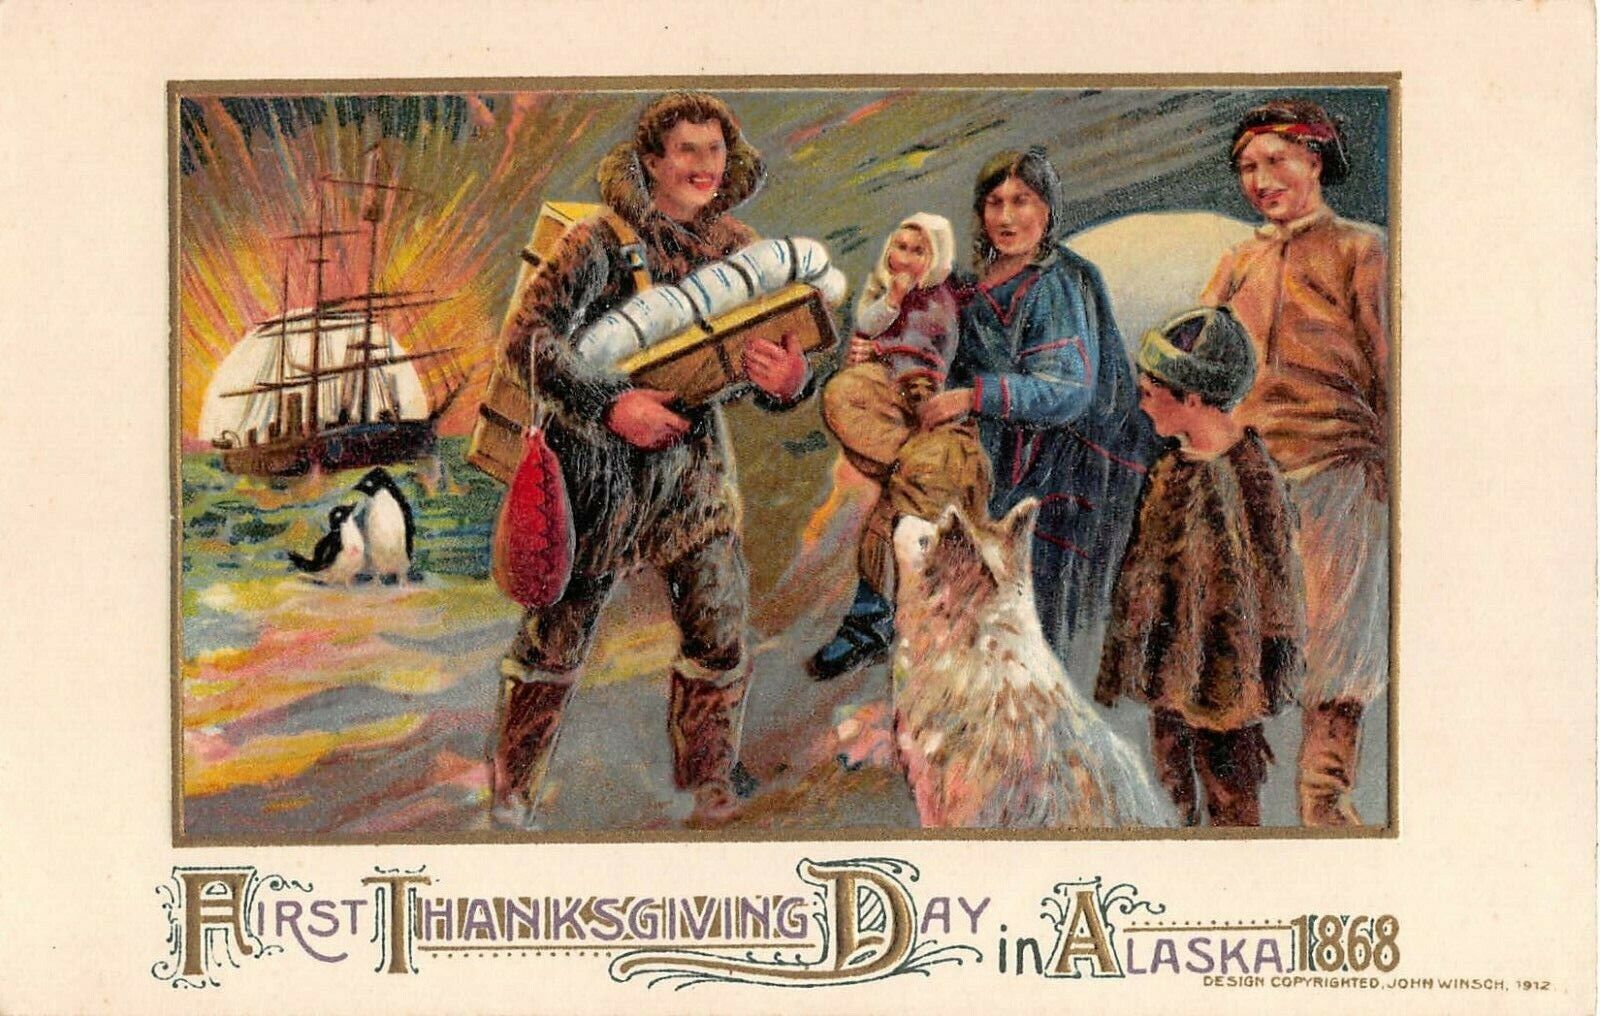 1912 First Thanksgiving Day in Alaska 1868 post card Winsch Schmucker